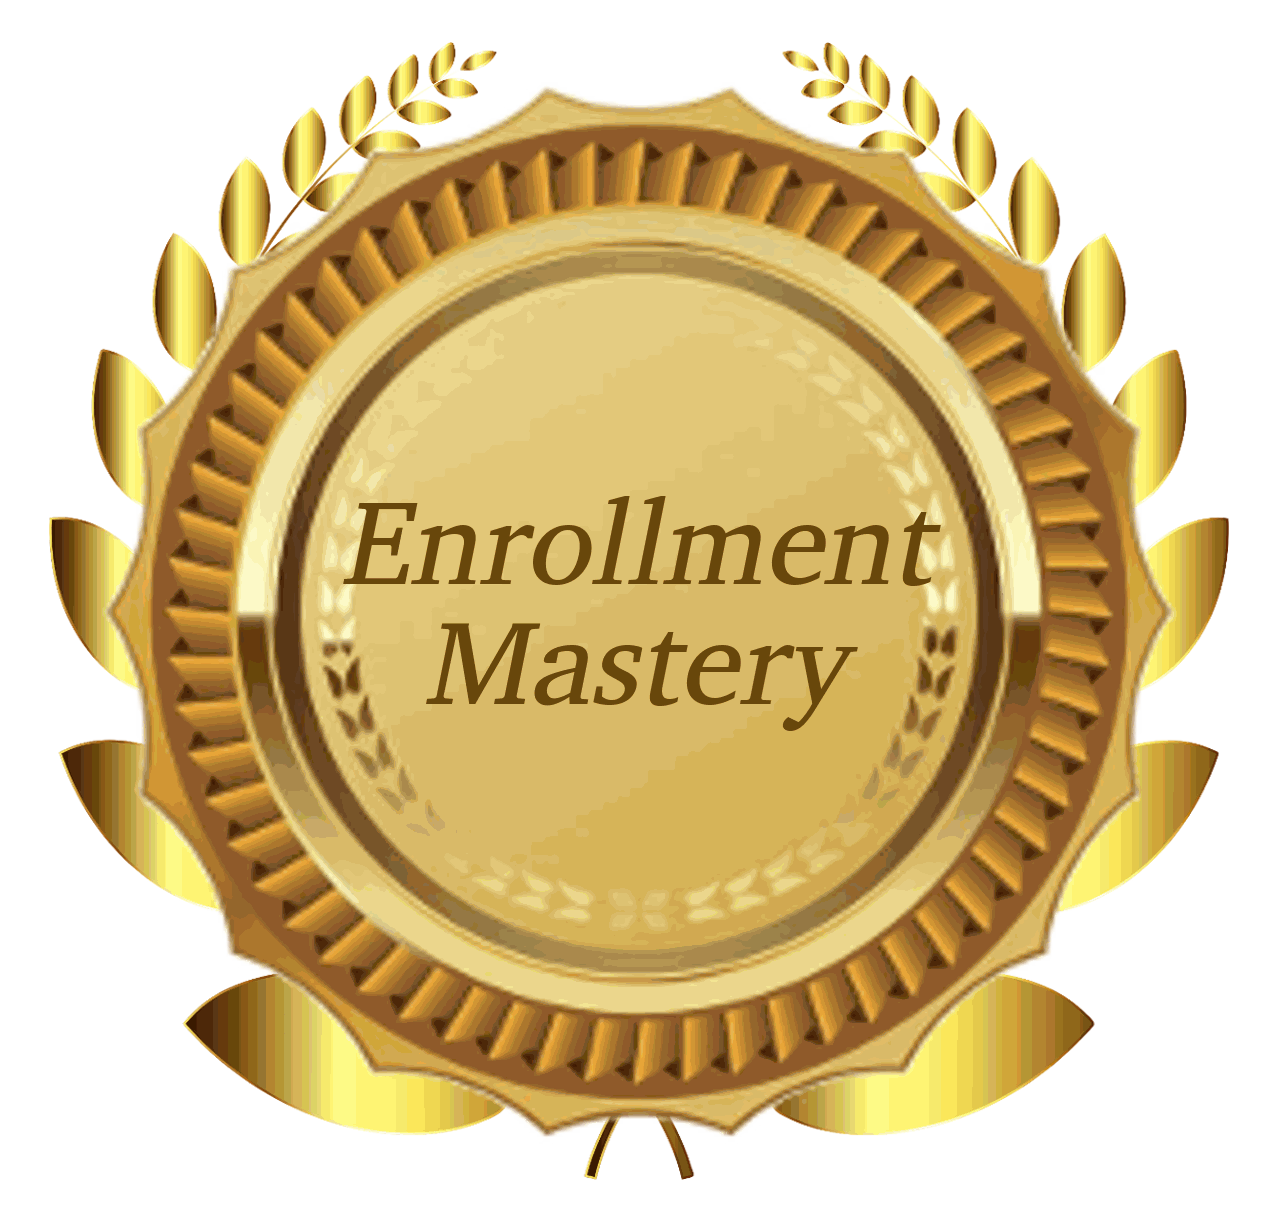 Enrollment Mastery